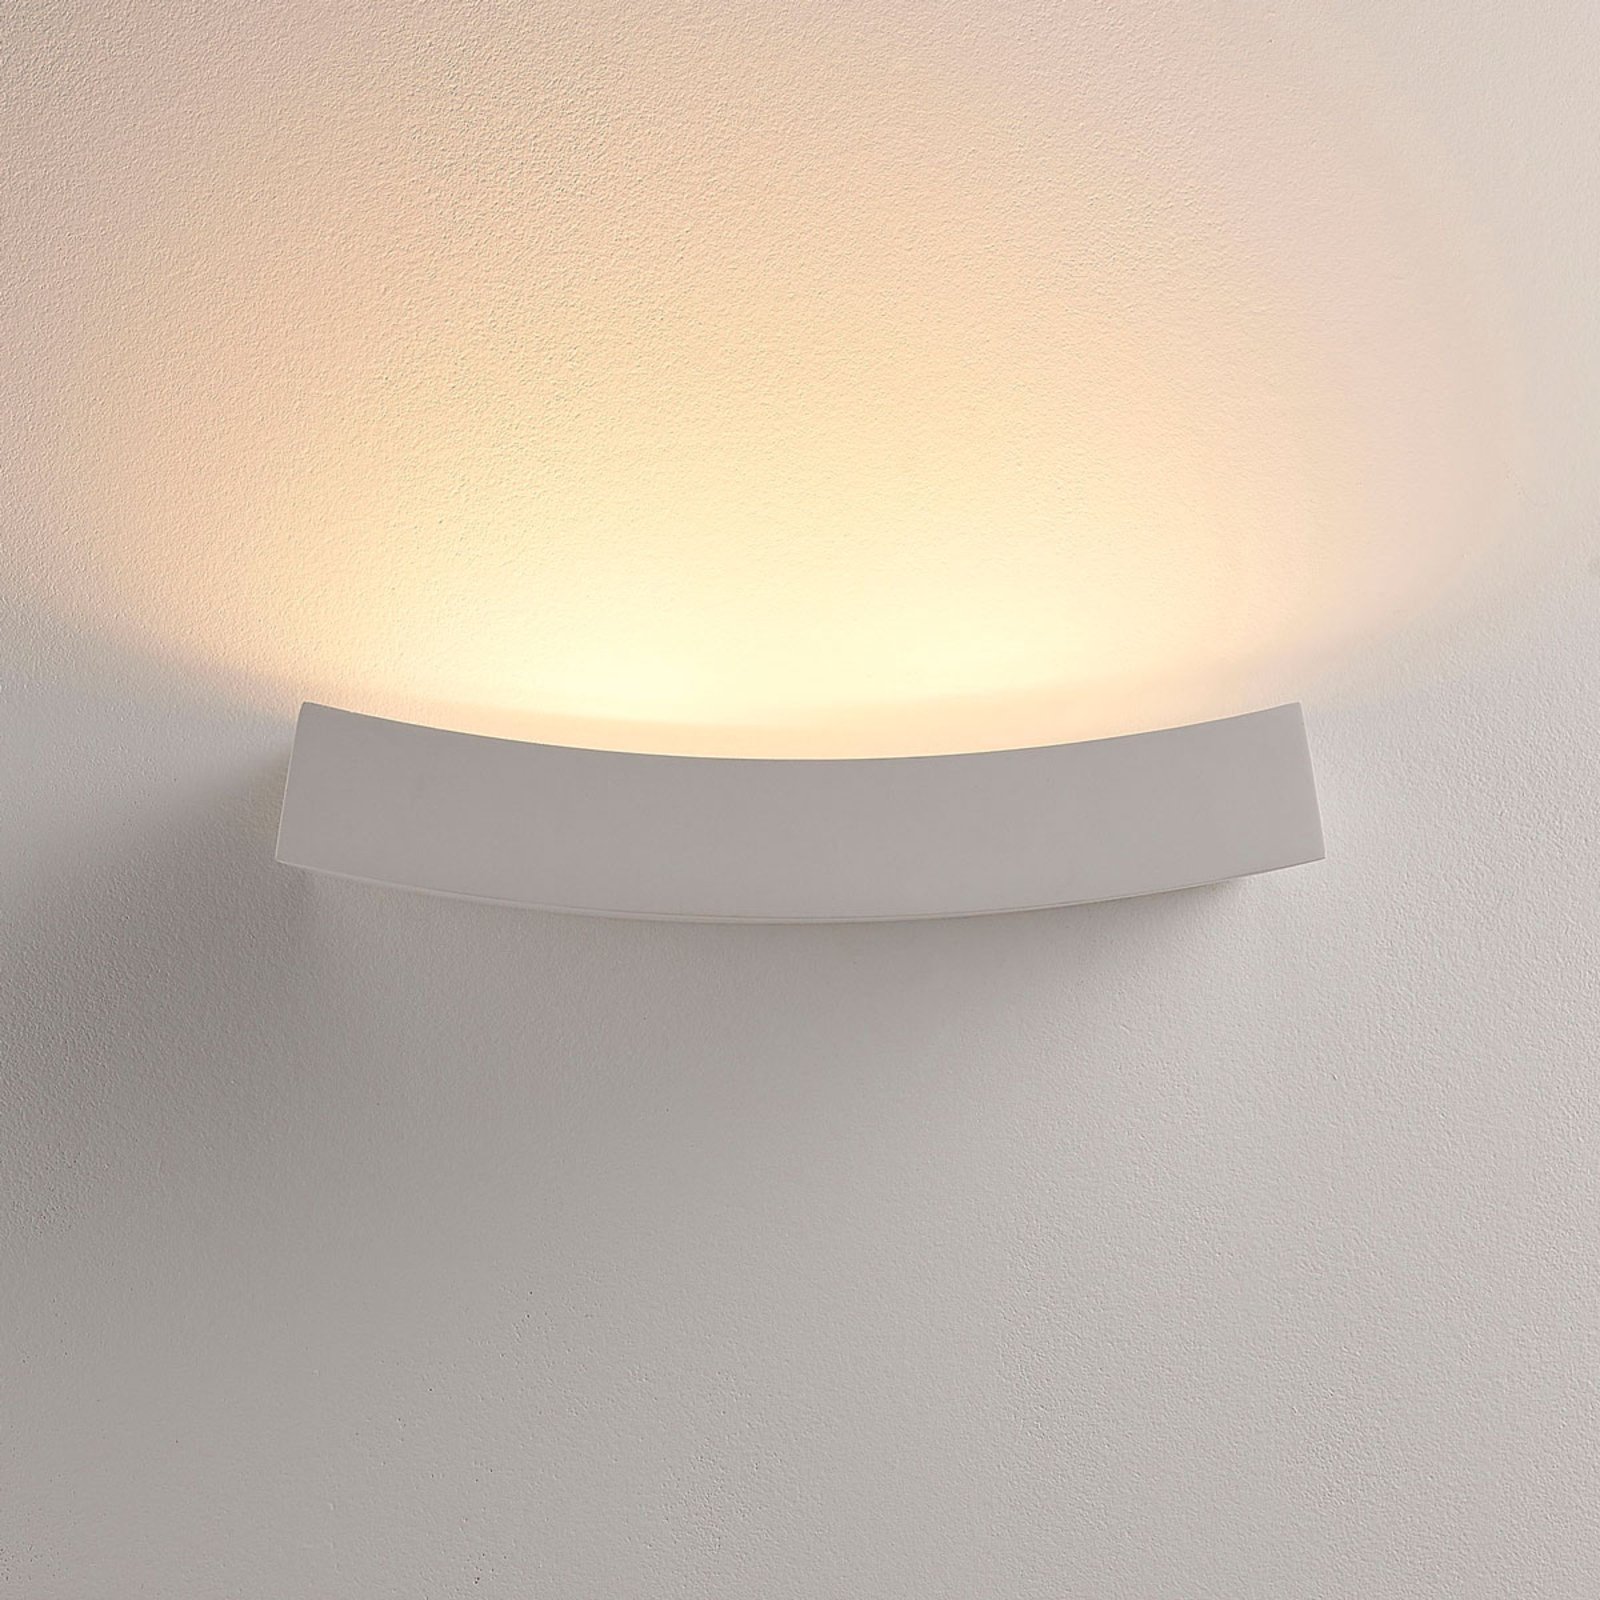 LED-vägg-uplight Tiara av gips, G9-lampa dimbar